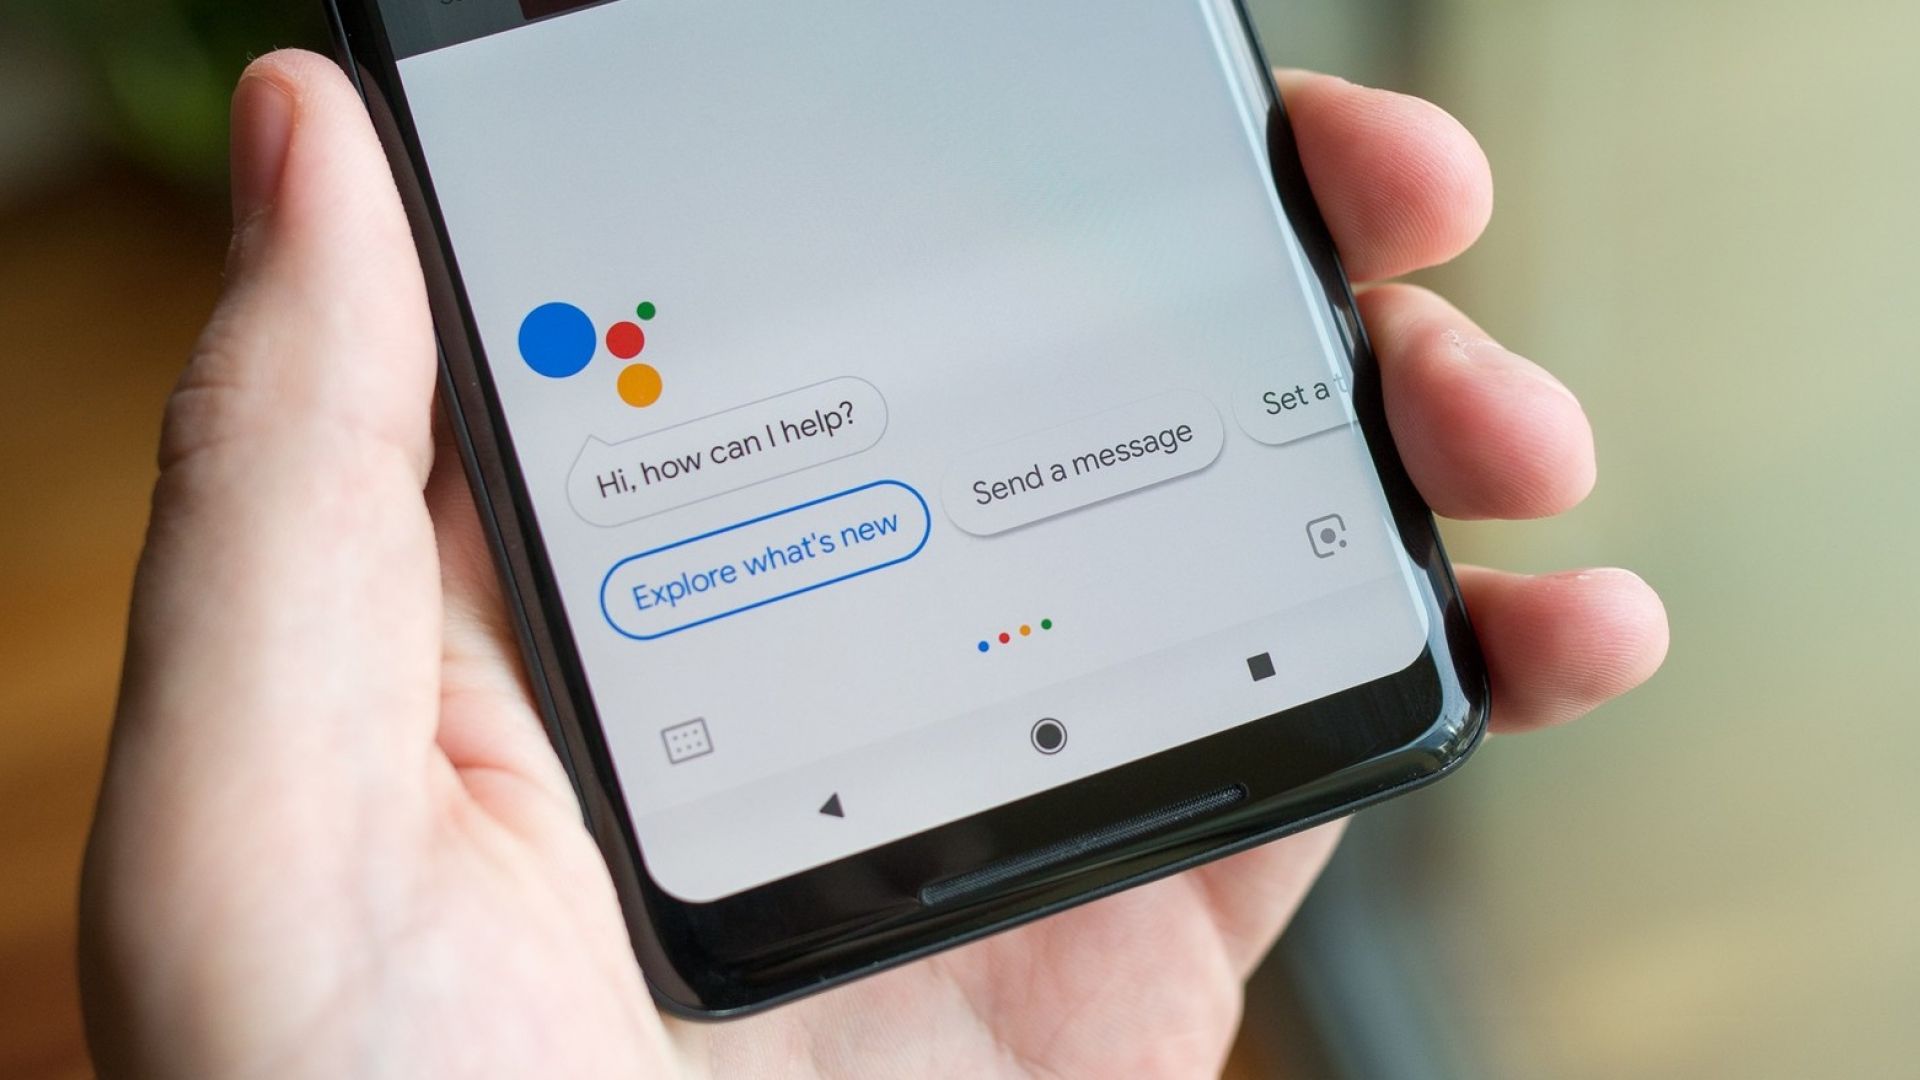 Google Assistant ще помага по време на изчакващи обаждания